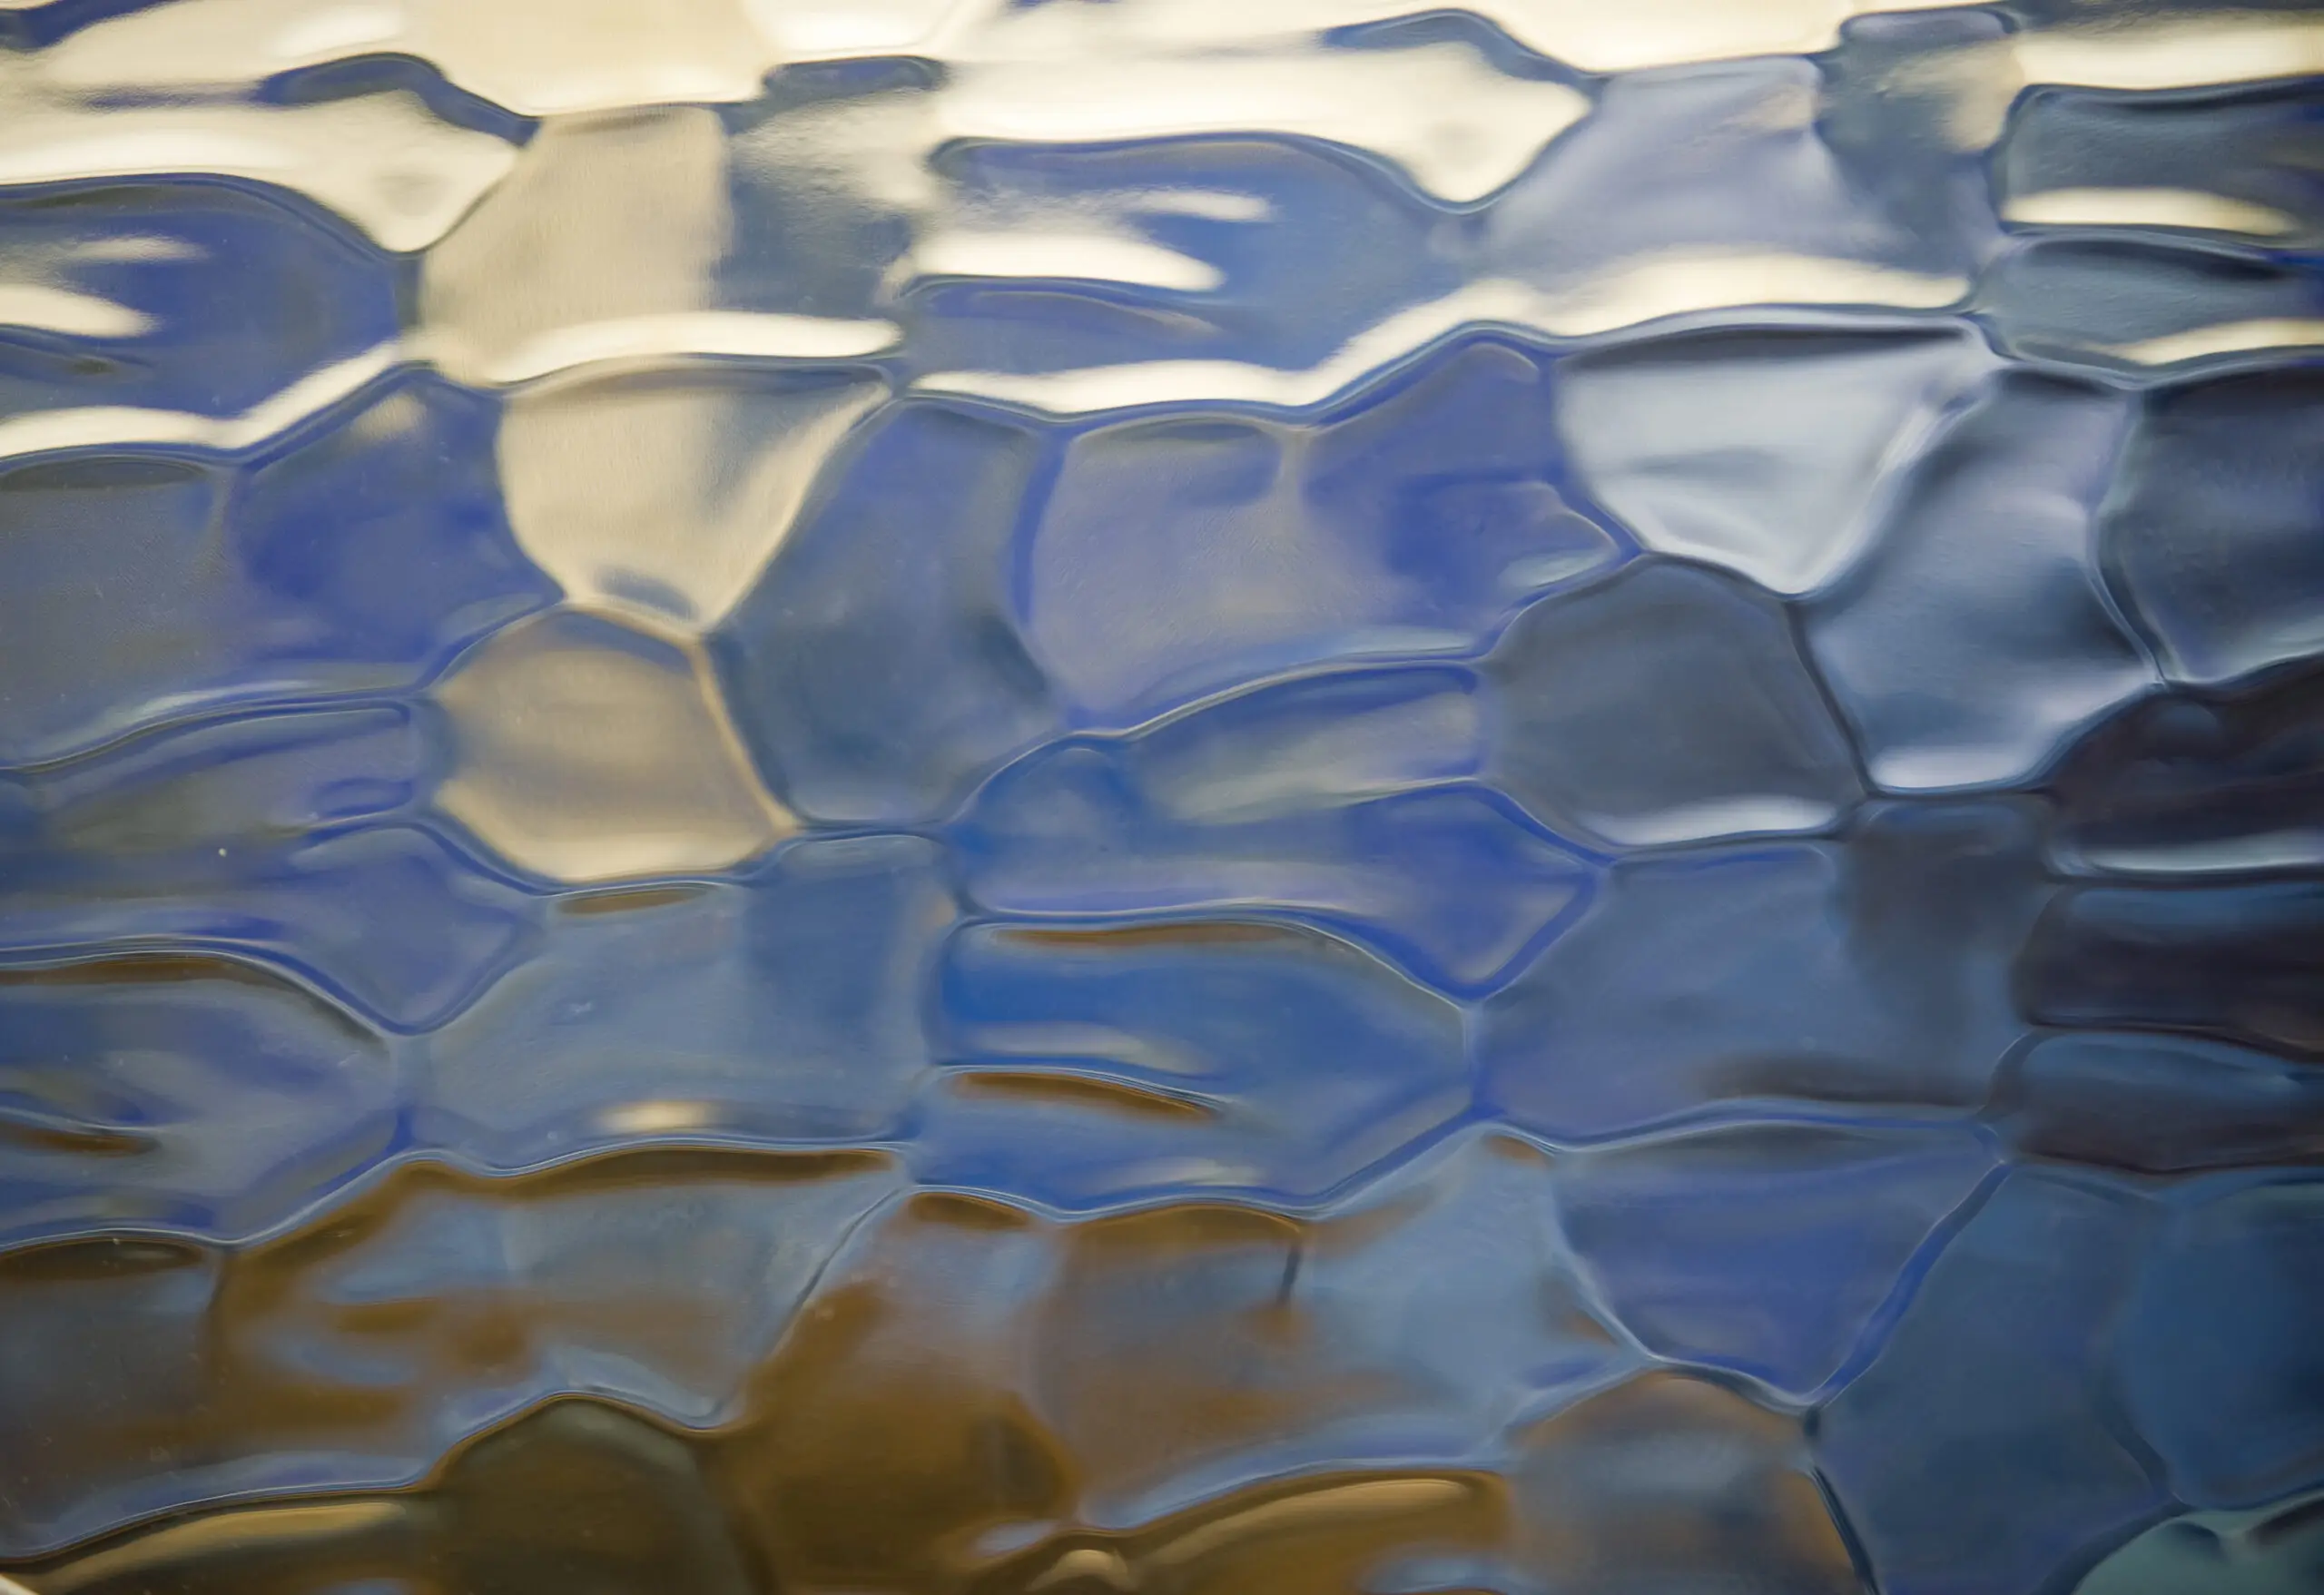 Wandbild (332) Glasperlenspiel präsentiert: Wasser,Details und Strukturen,Abstrakt,Wasserspiegelungen,Sonstige Naturdetails